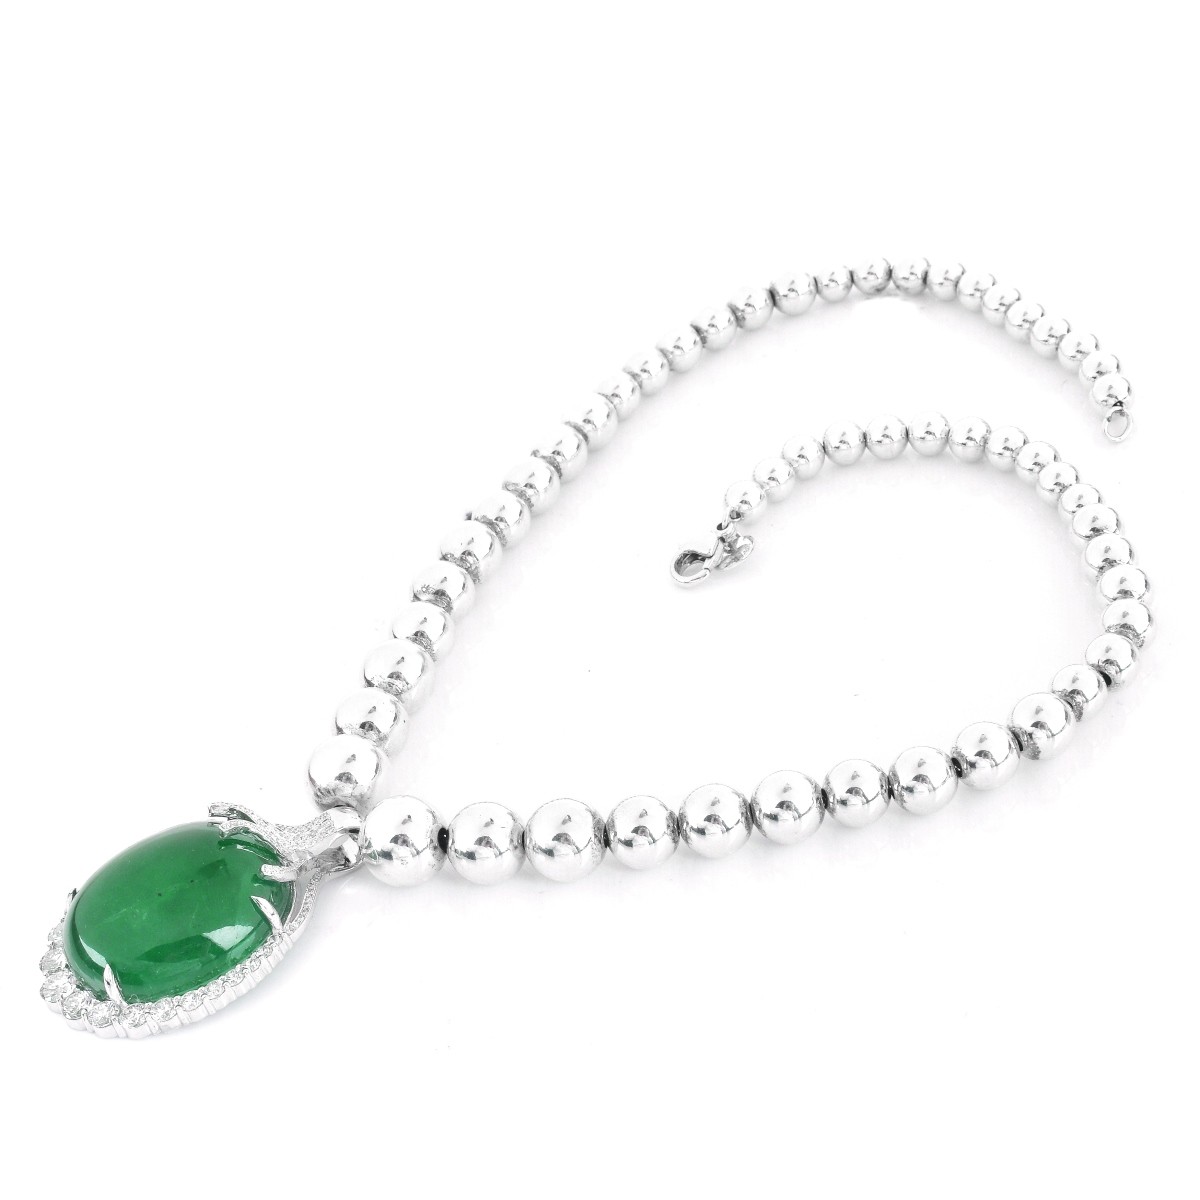 62.34ct Cabochon Emerald Pendant